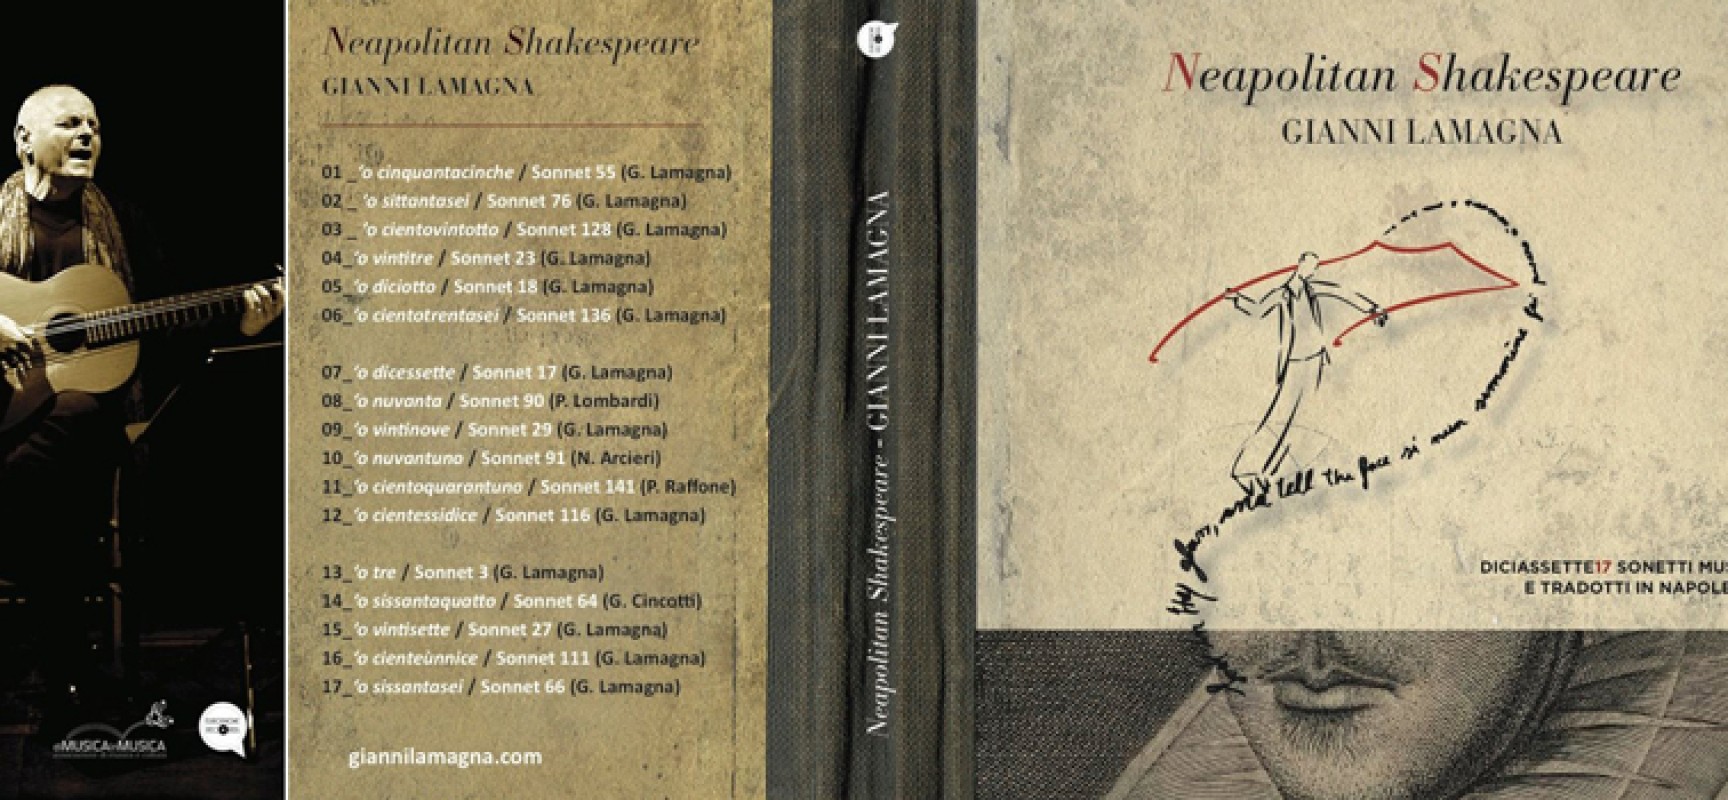 Neapolitan Shakespeare, originale progetto musicale con una matrice biscegliese